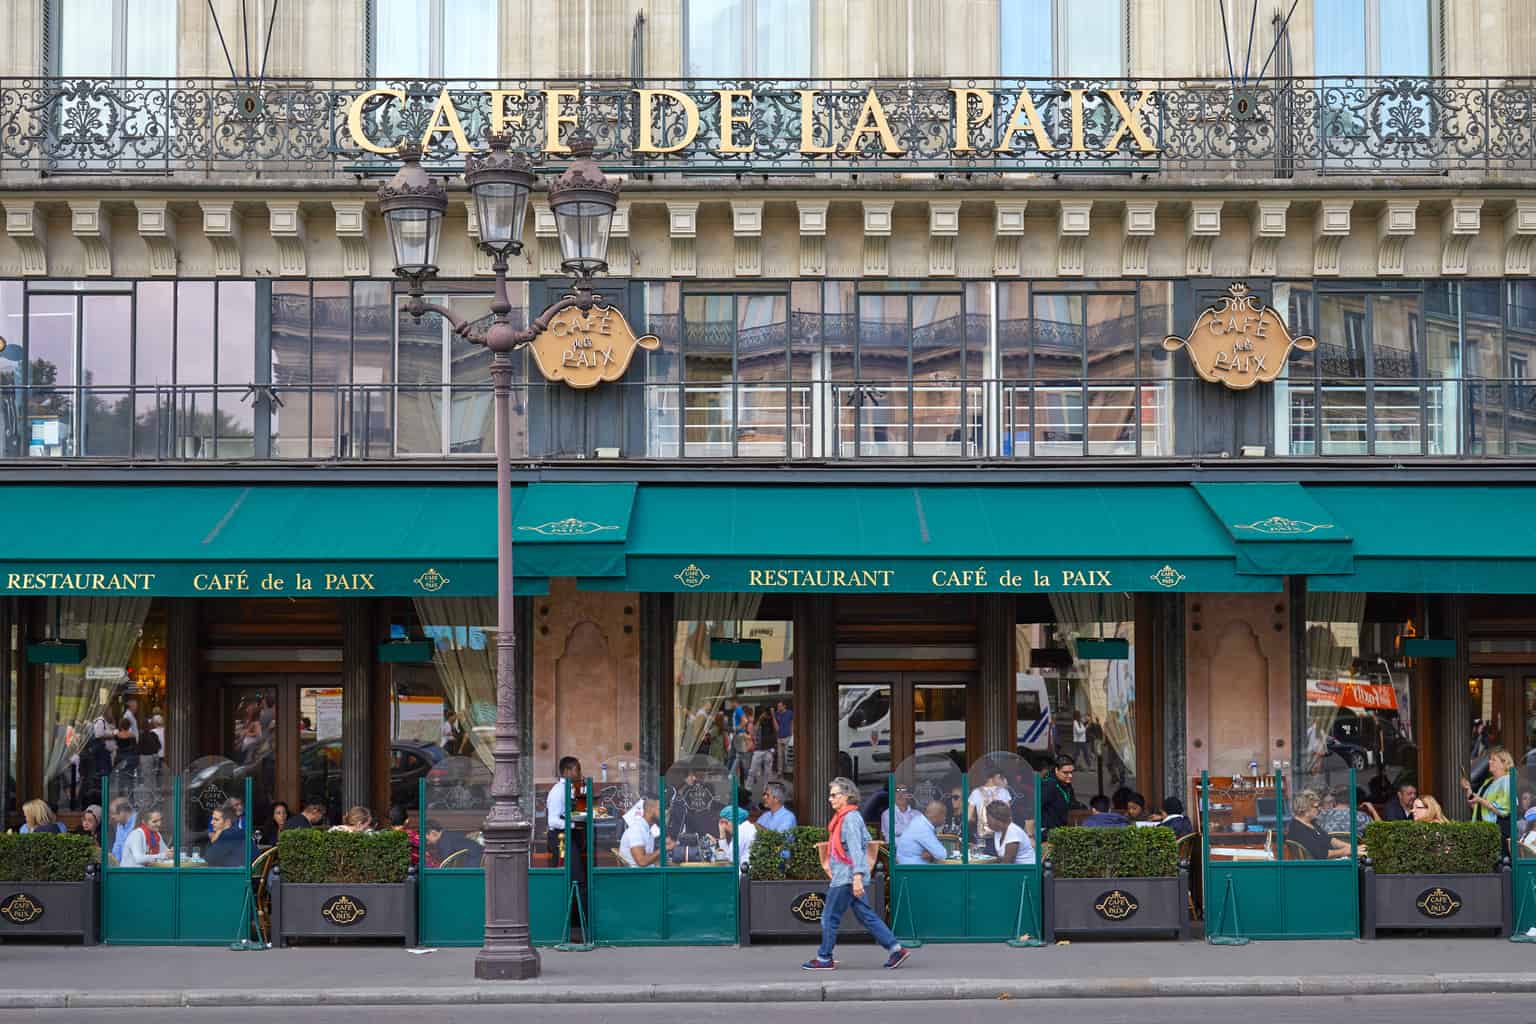 The chic, historic beauty of Cafe de la Paix in Paris.